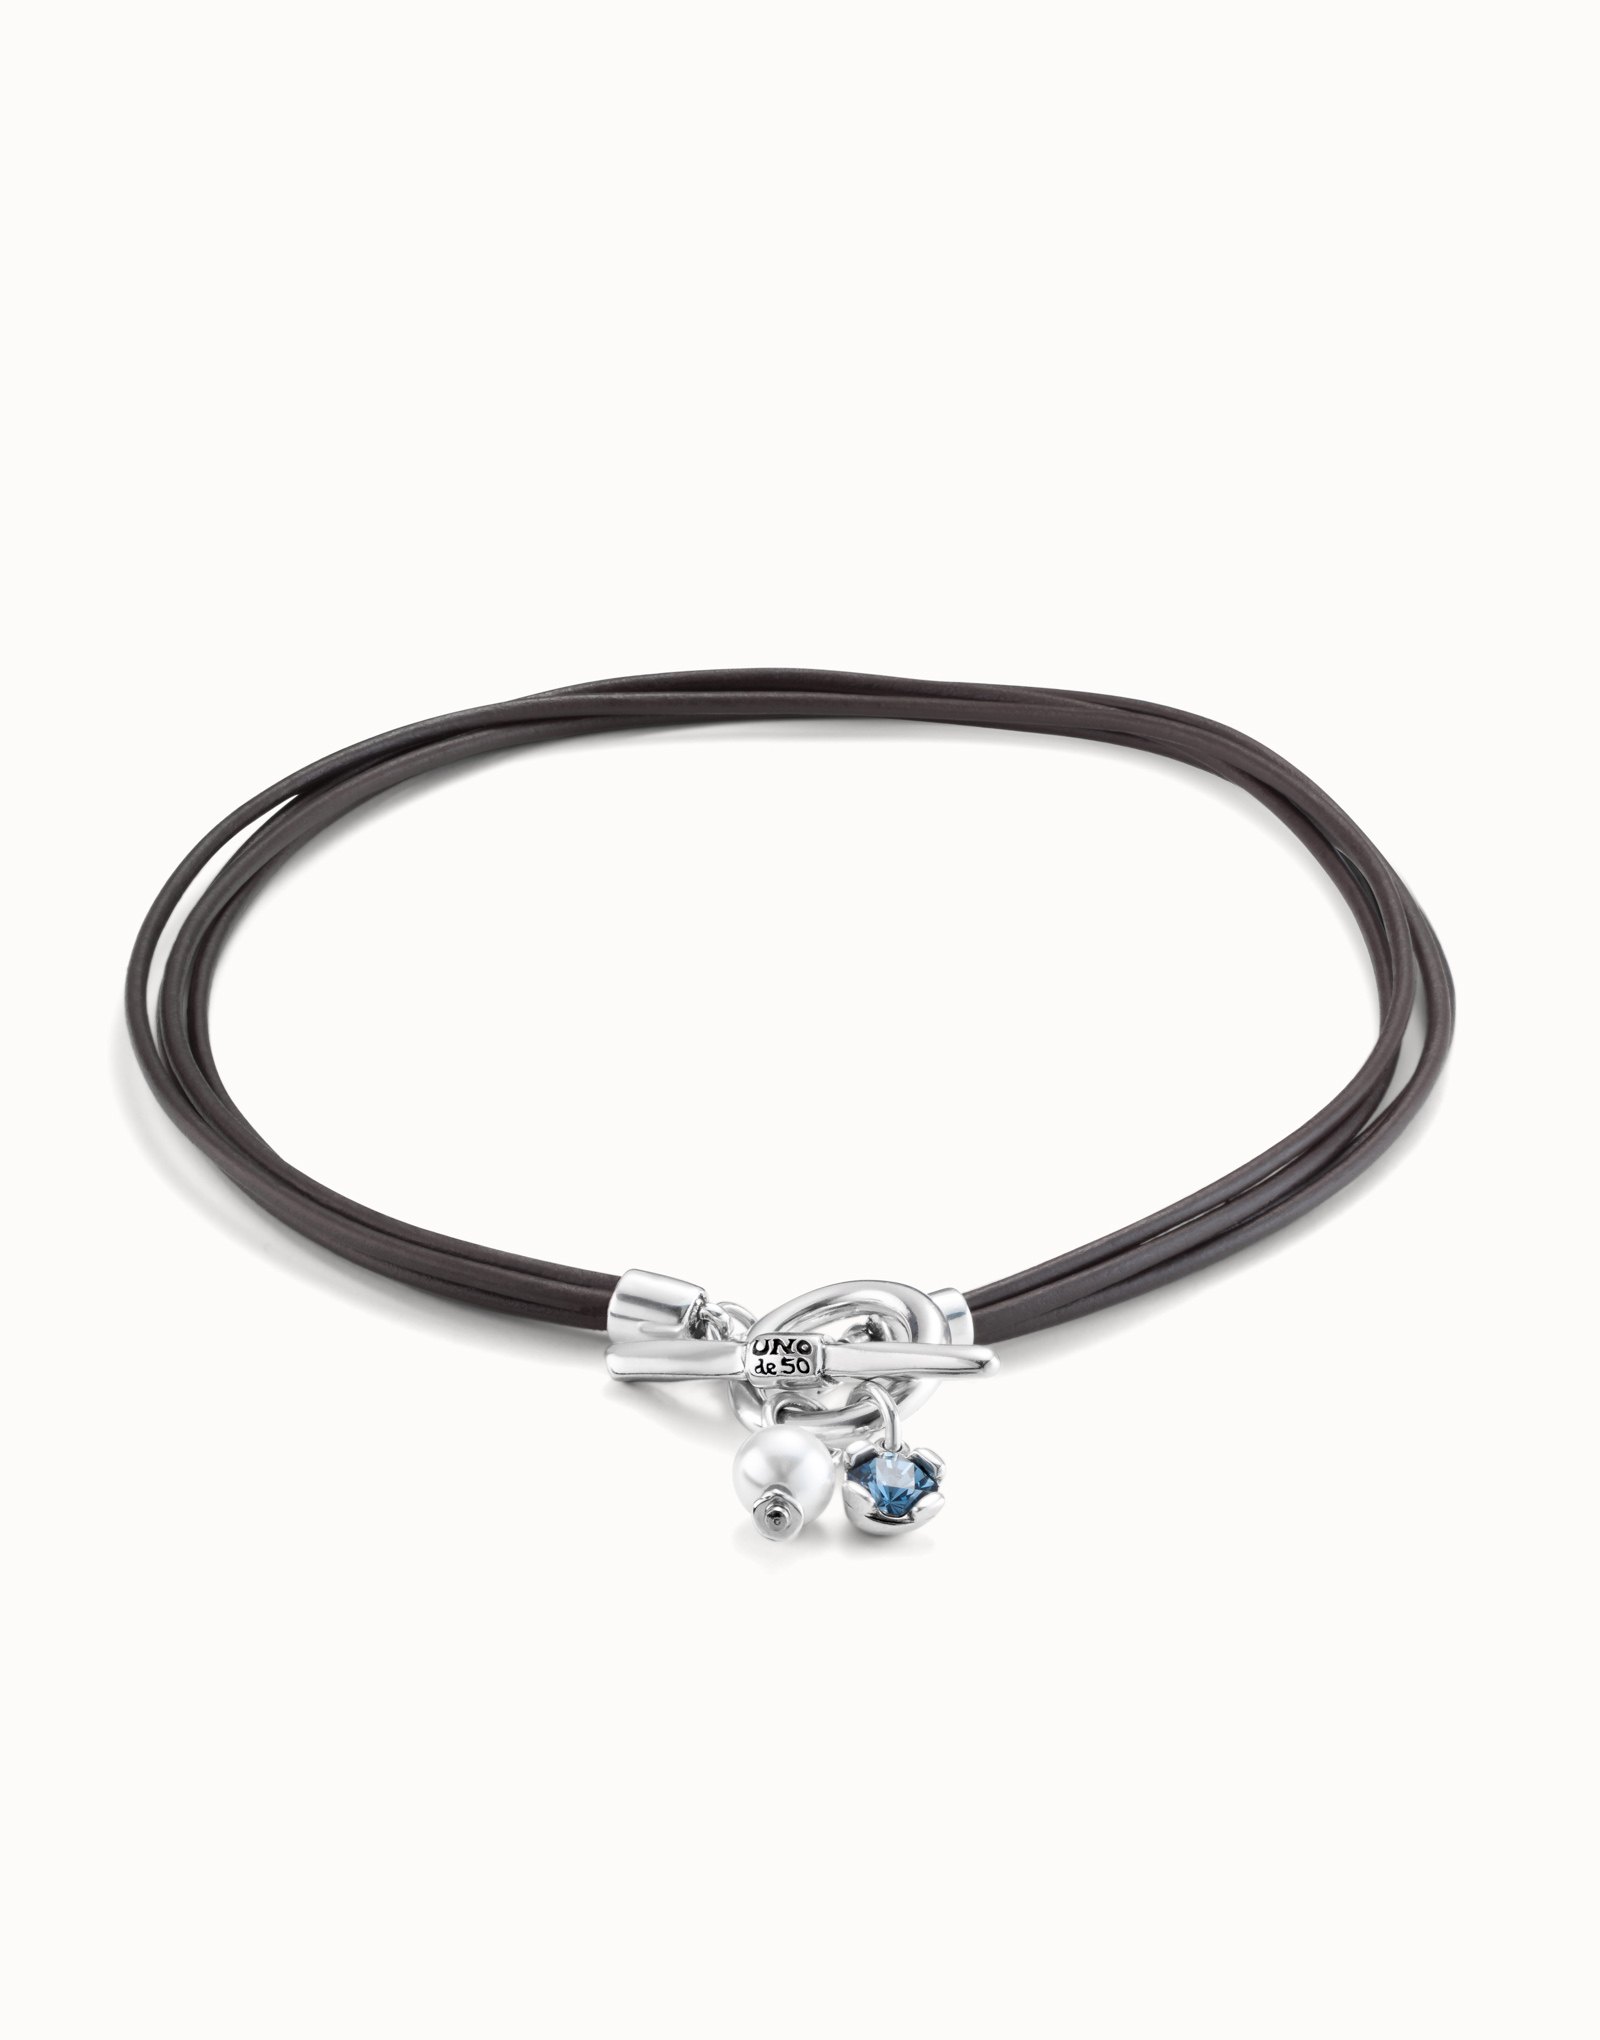 Collana di cuoio con chiusura centrale, charm di perla e cristallo., Argent, large image number null